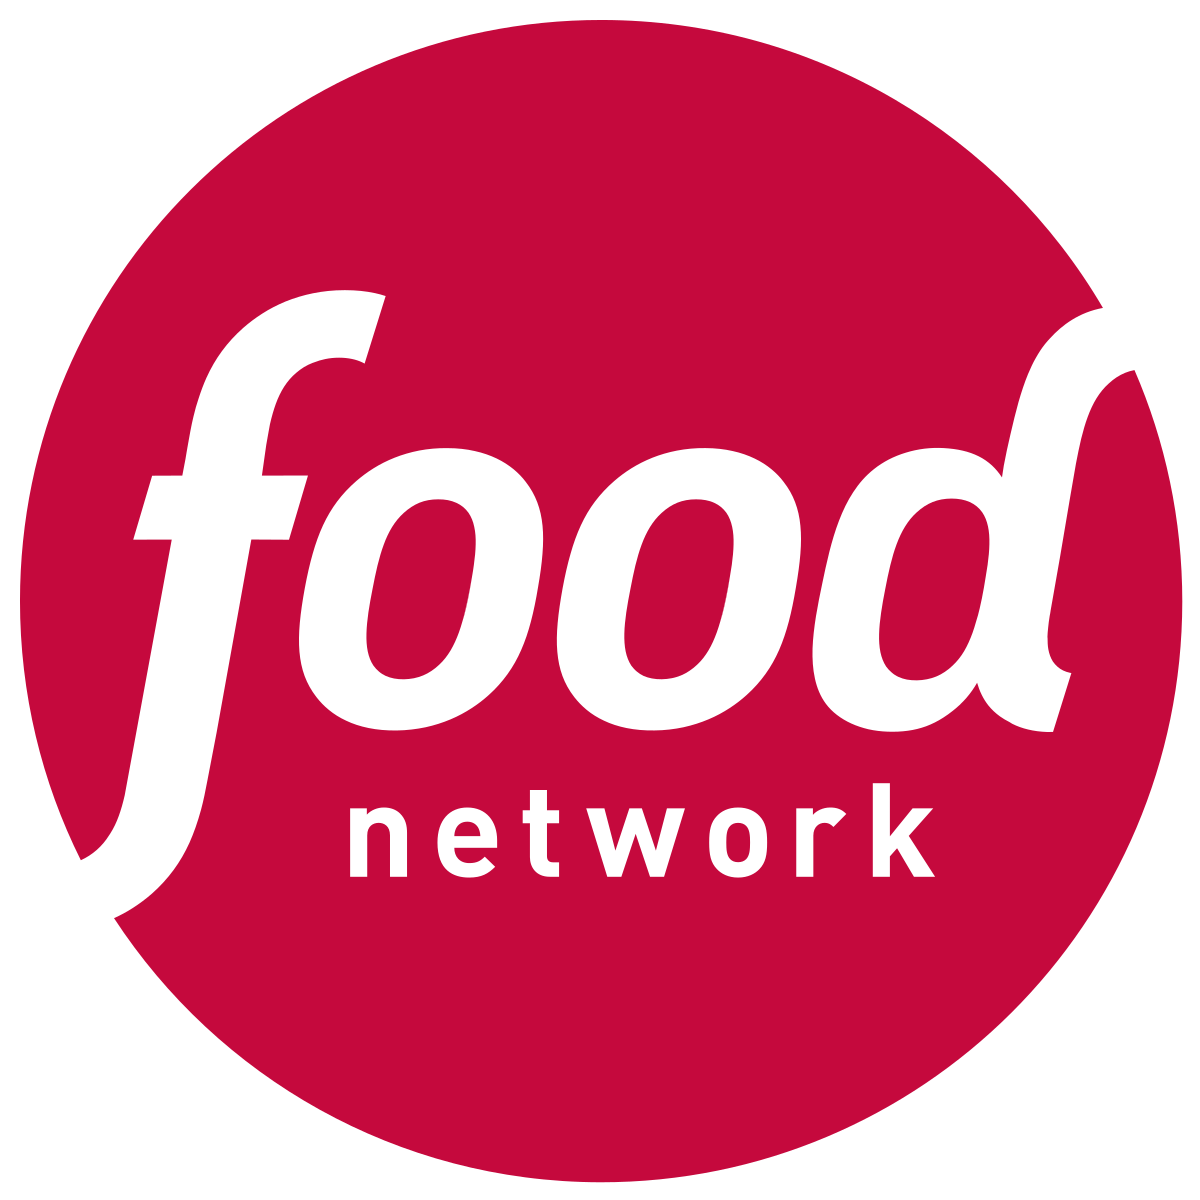 Food_Network_logo.svg.png